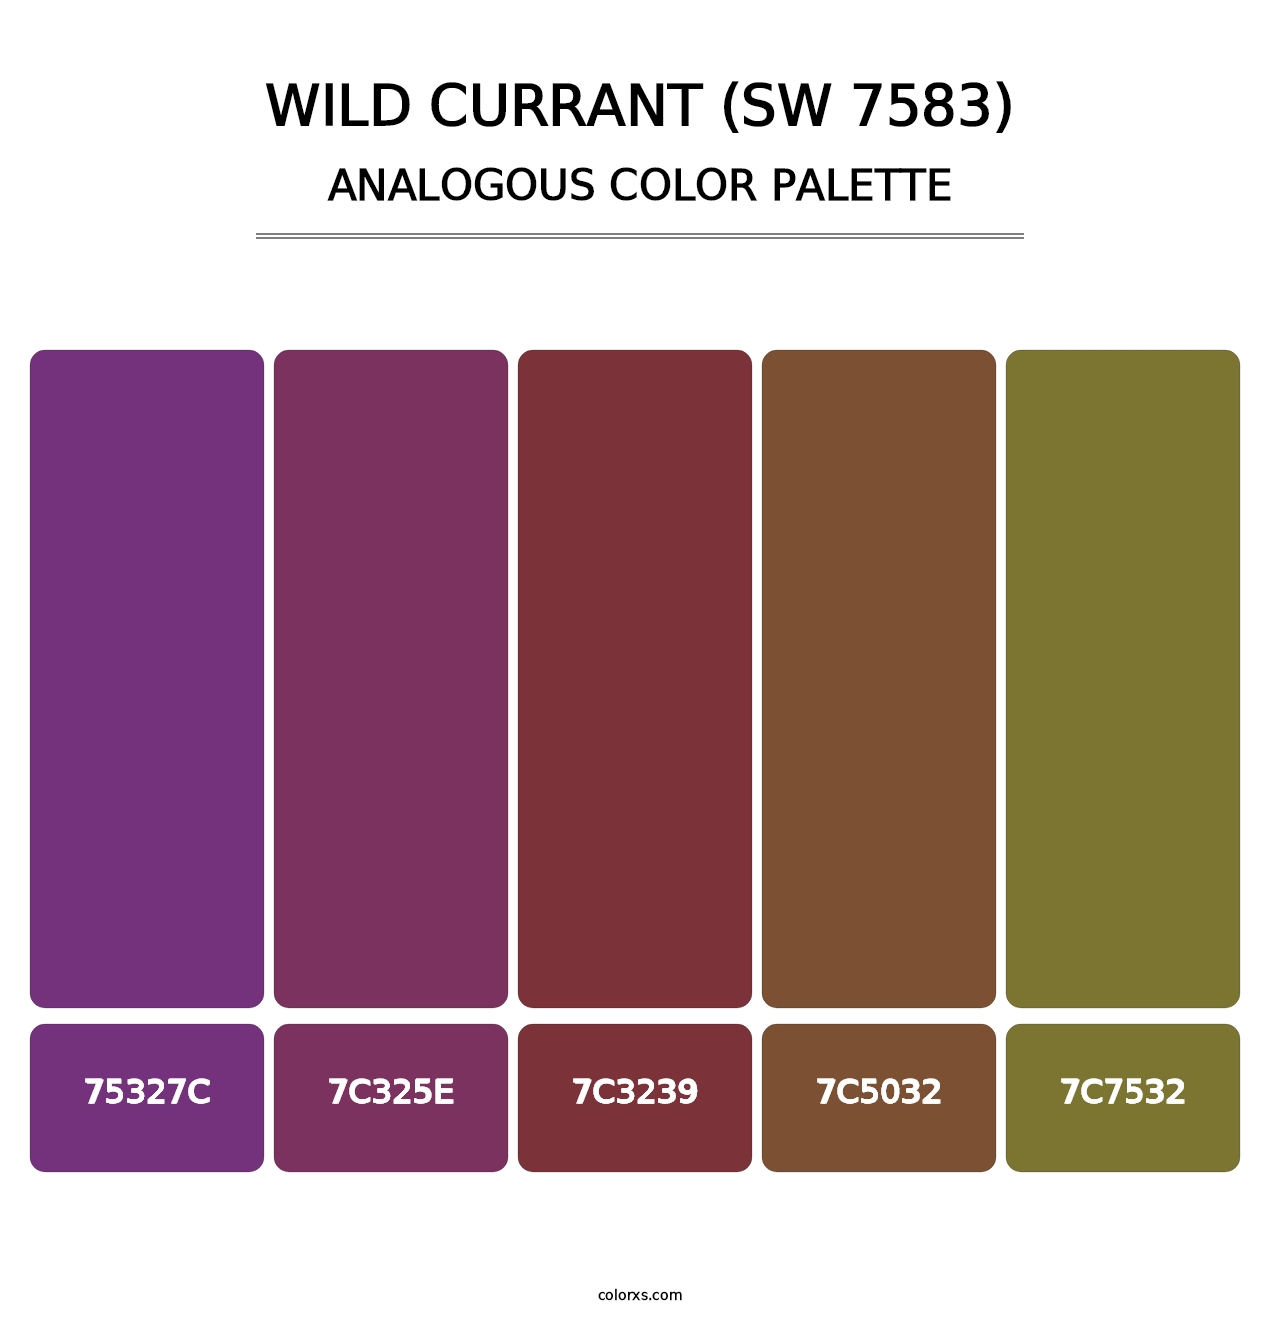 Wild Currant (SW 7583) - Analogous Color Palette